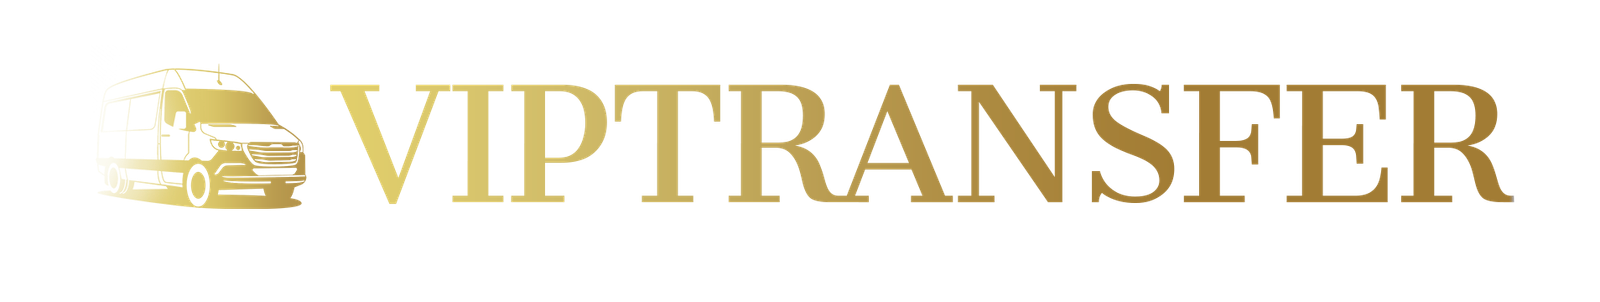 Logo Transfer Final Transparencia